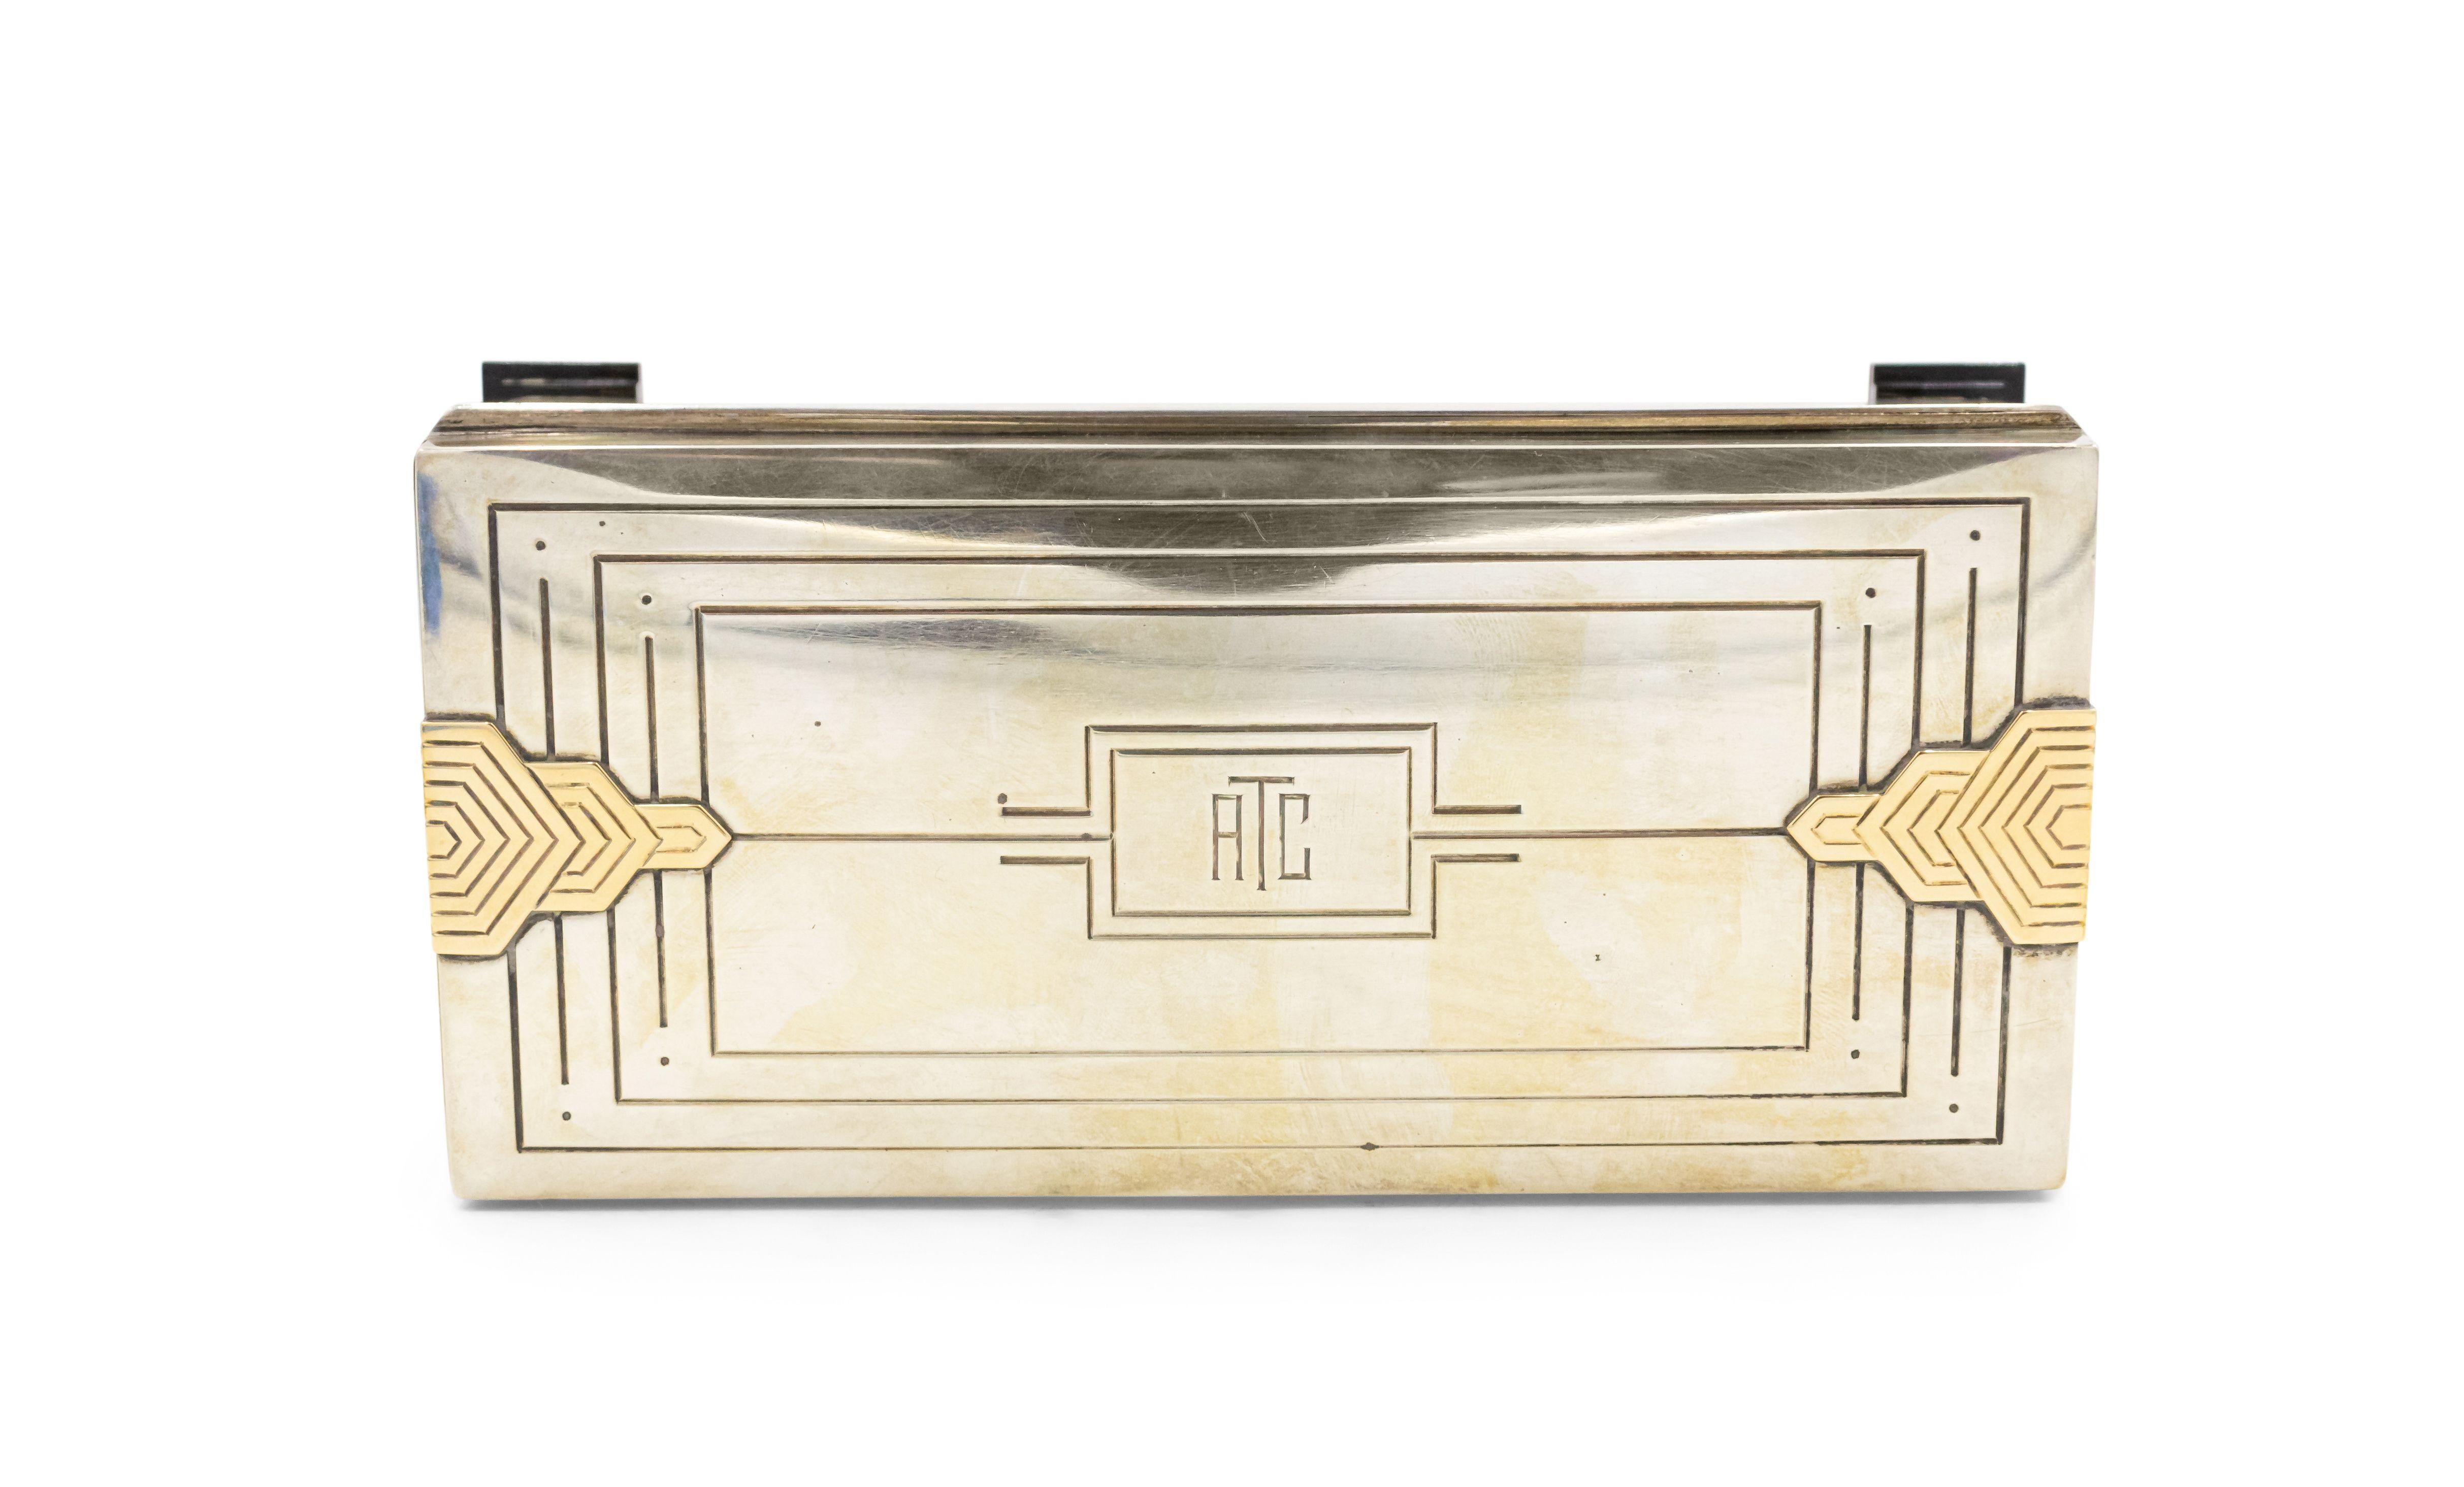 Boîte rectangulaire en argent sterling de style Art déco anglais avec un design cannelé et un motif géométrique de 14 Caret sur les côtés avec des initiales : ATC sur le dessus.
